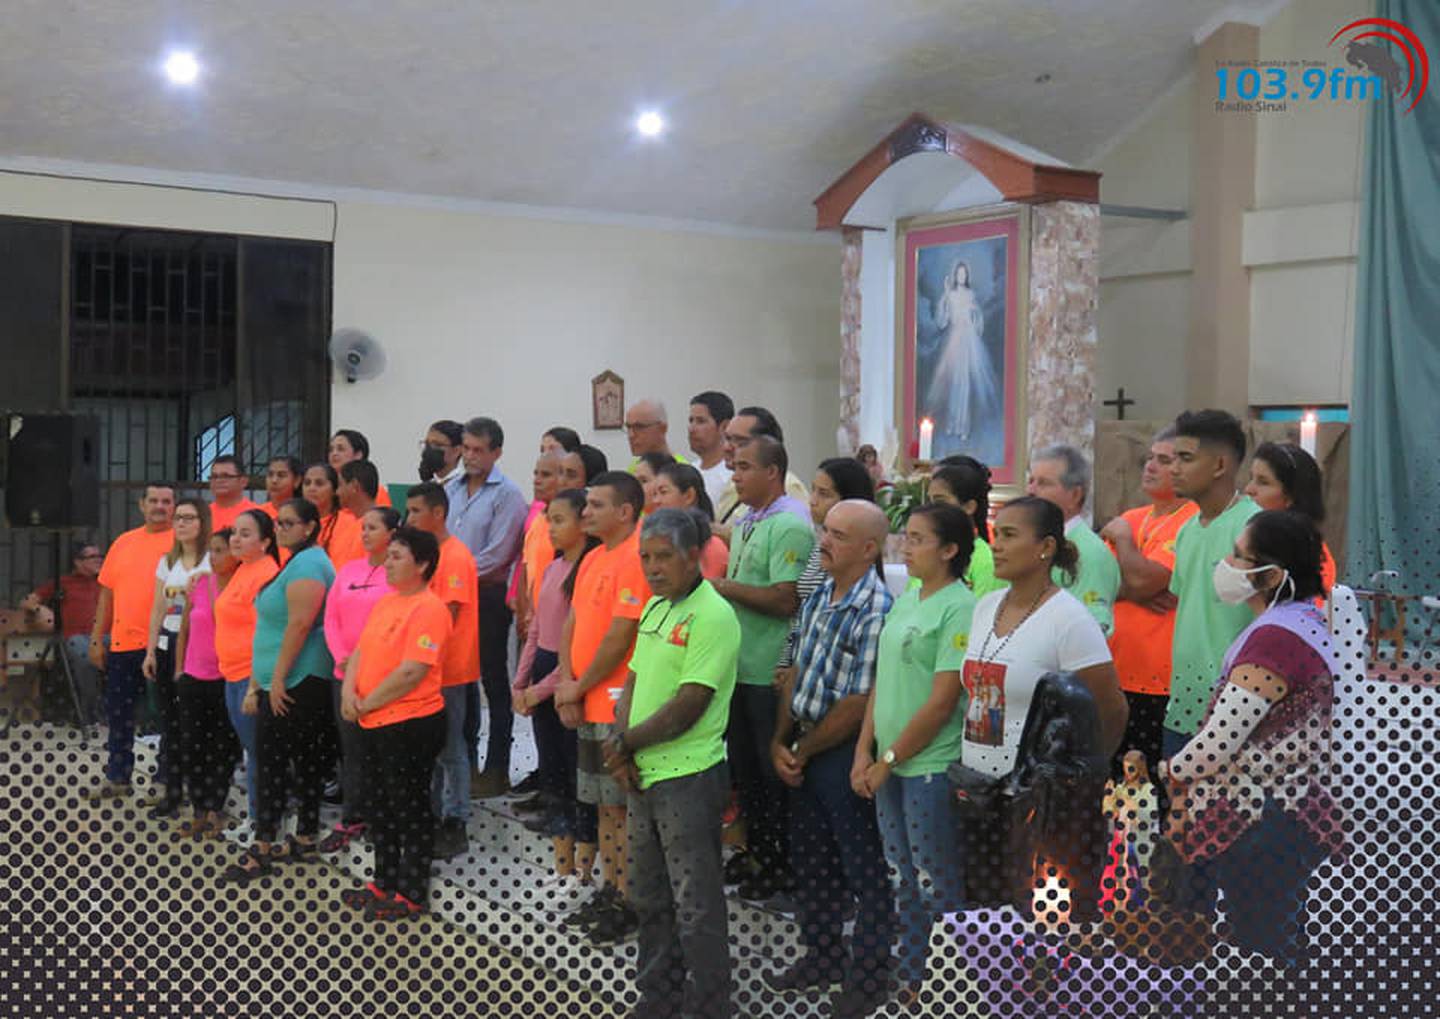 Unos 50 romeros salieron el pasado viernes 22 de julio desde Río Claro, en el cantón de Corredores (Zona Sur, cerquita de la frontera con Panamá), para cumplirle la visita a la virgen de Los Ángeles en Cartago